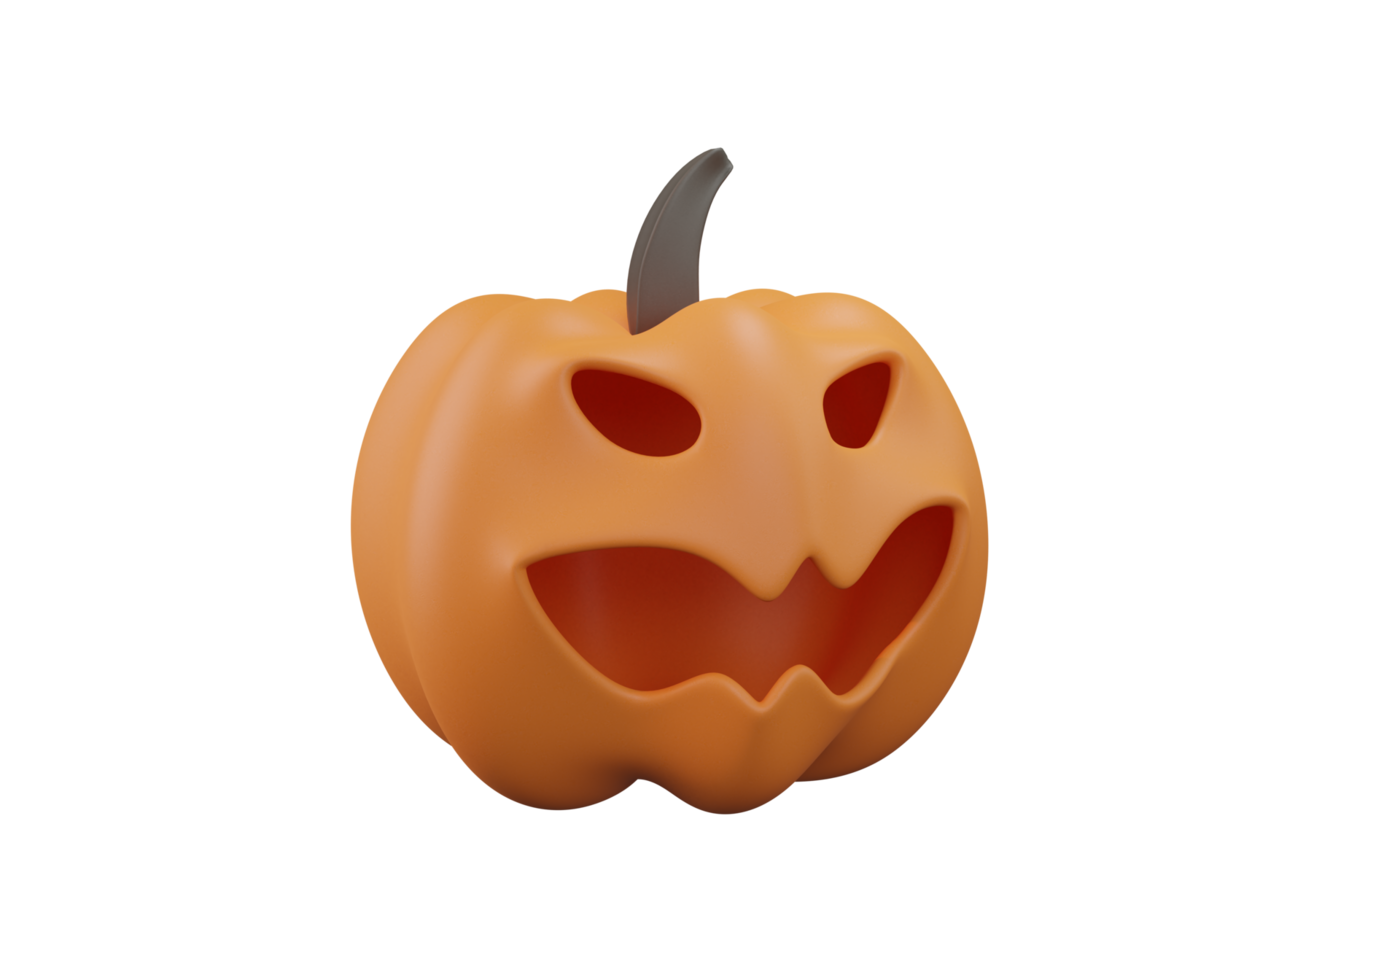 png tête de citrouille jack o lantern couleur orange illustration de rendu 3d pour fond d'halloween.